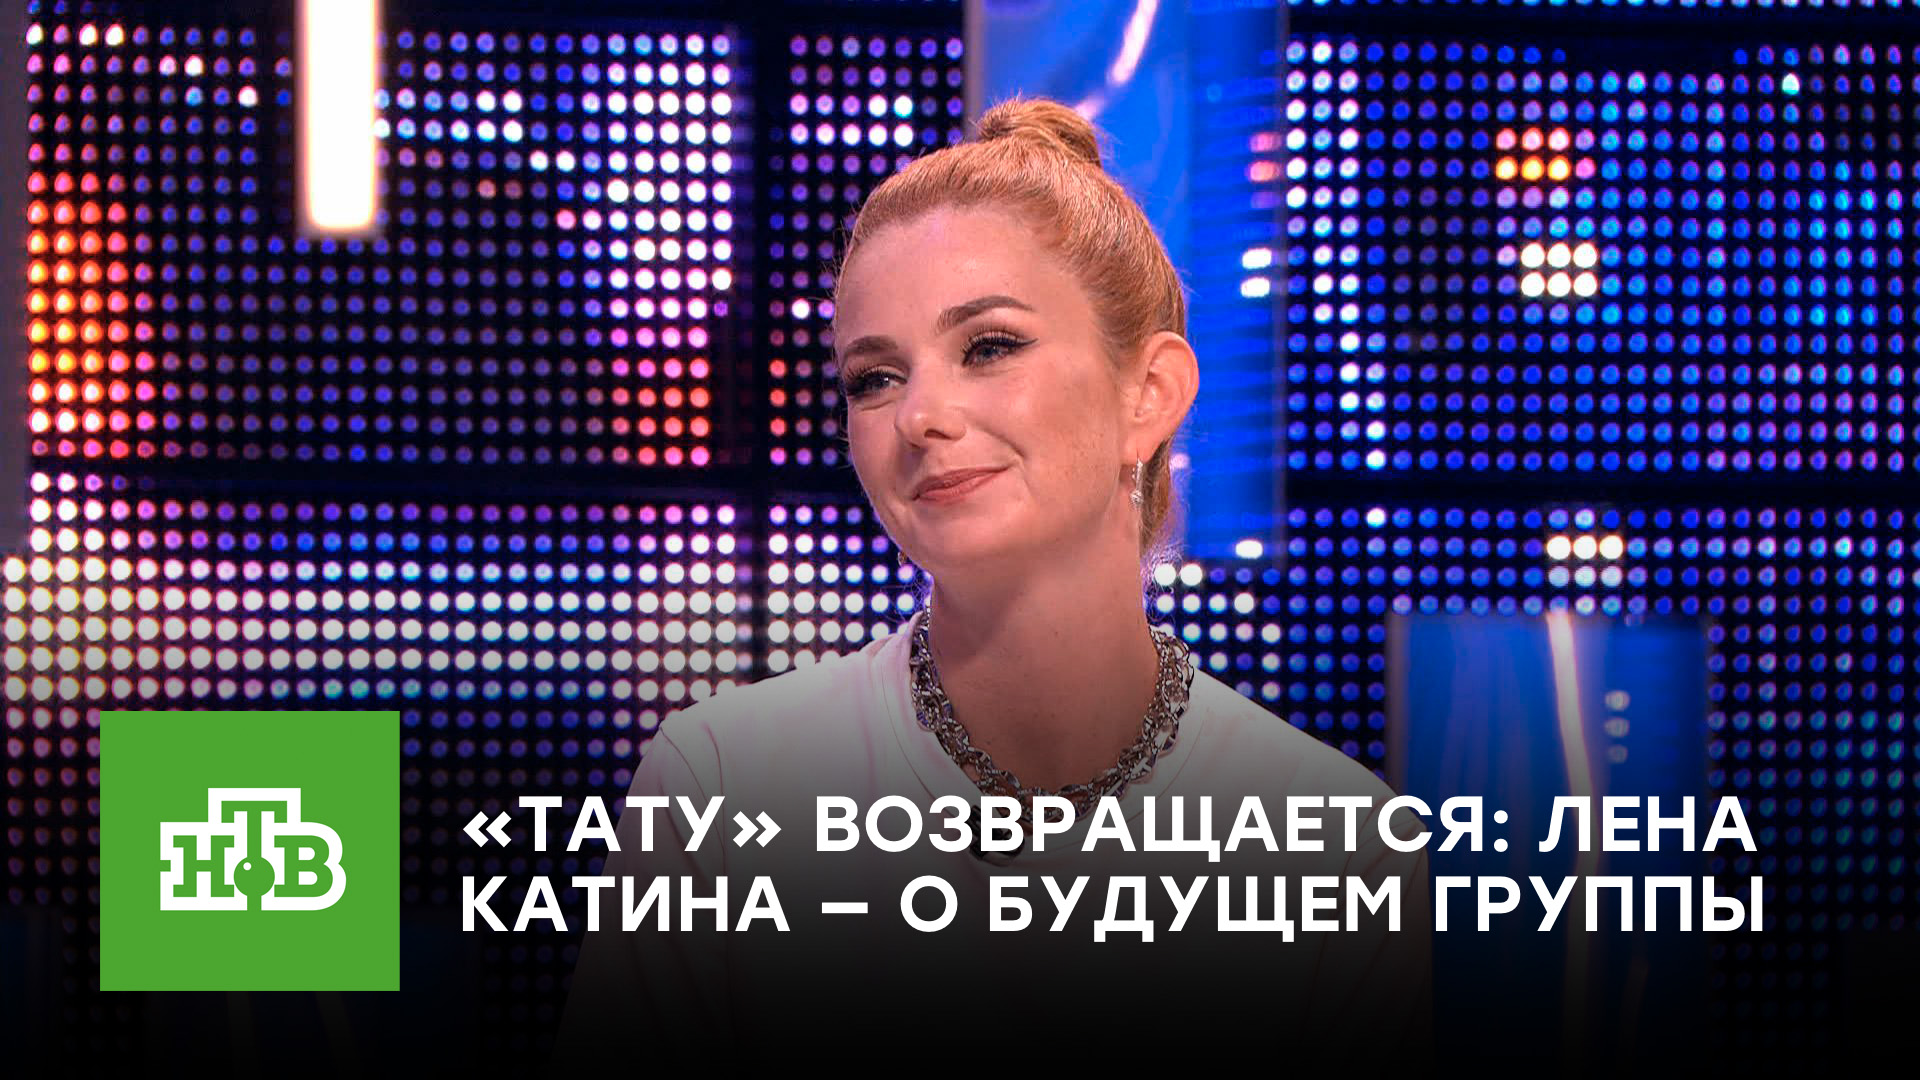 Лена Катина в эфире НТВ рассказала о воссоединении группы t.A.T.u.